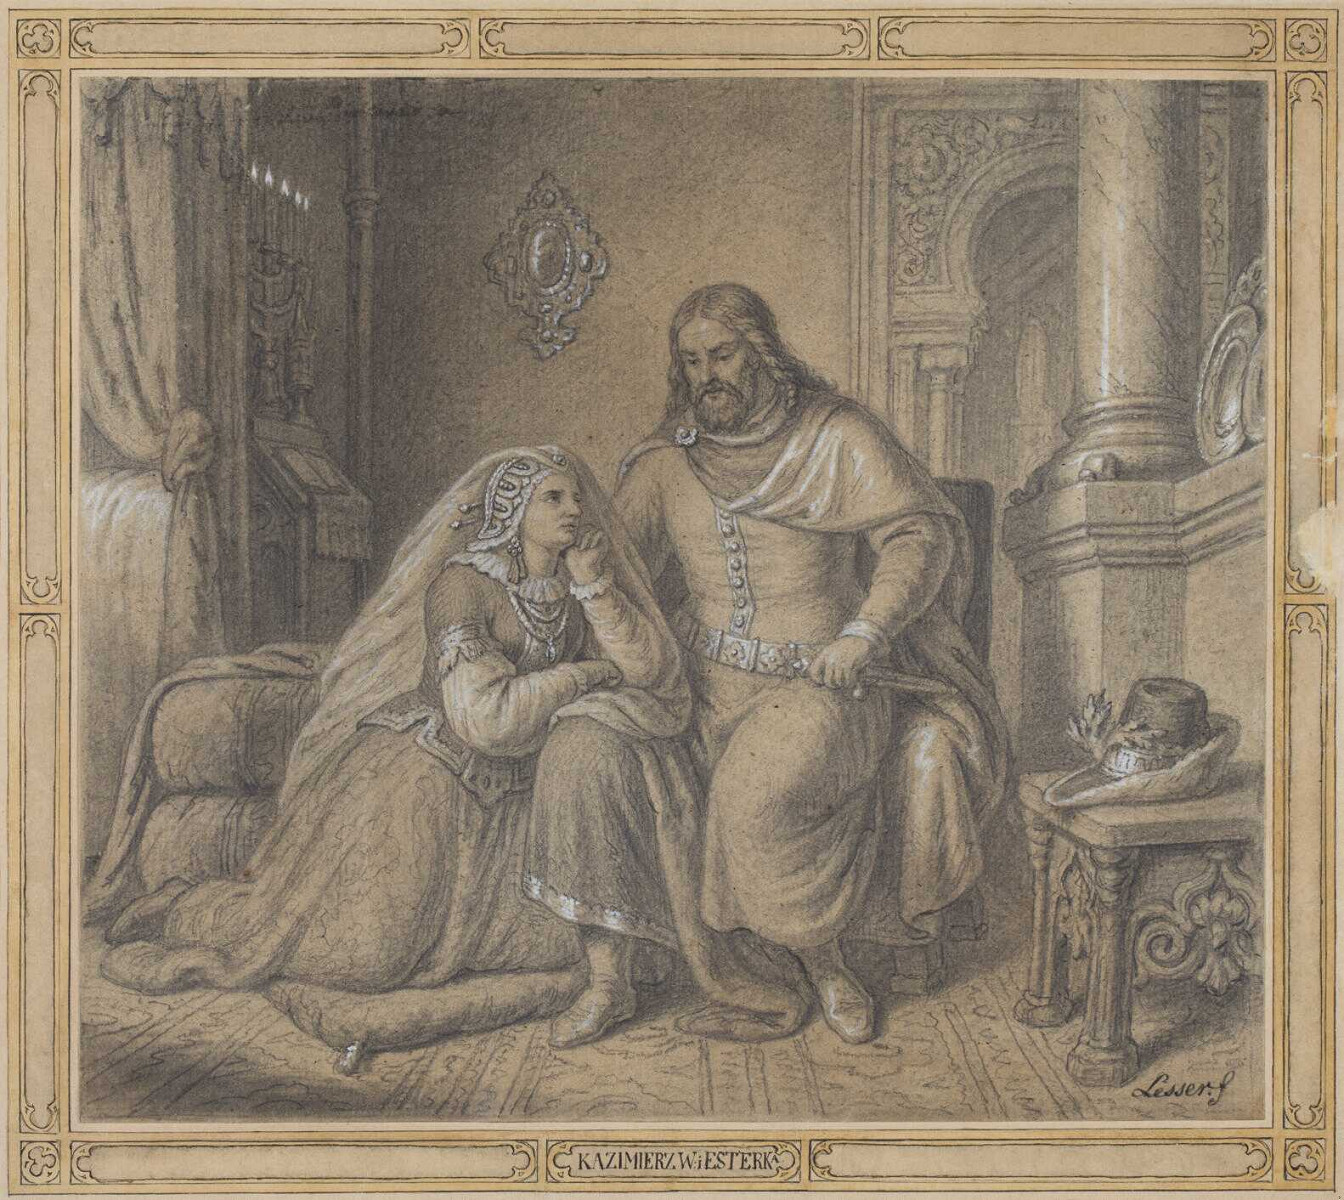 Kazimierz i Esterka.jpg [257.65 KB]